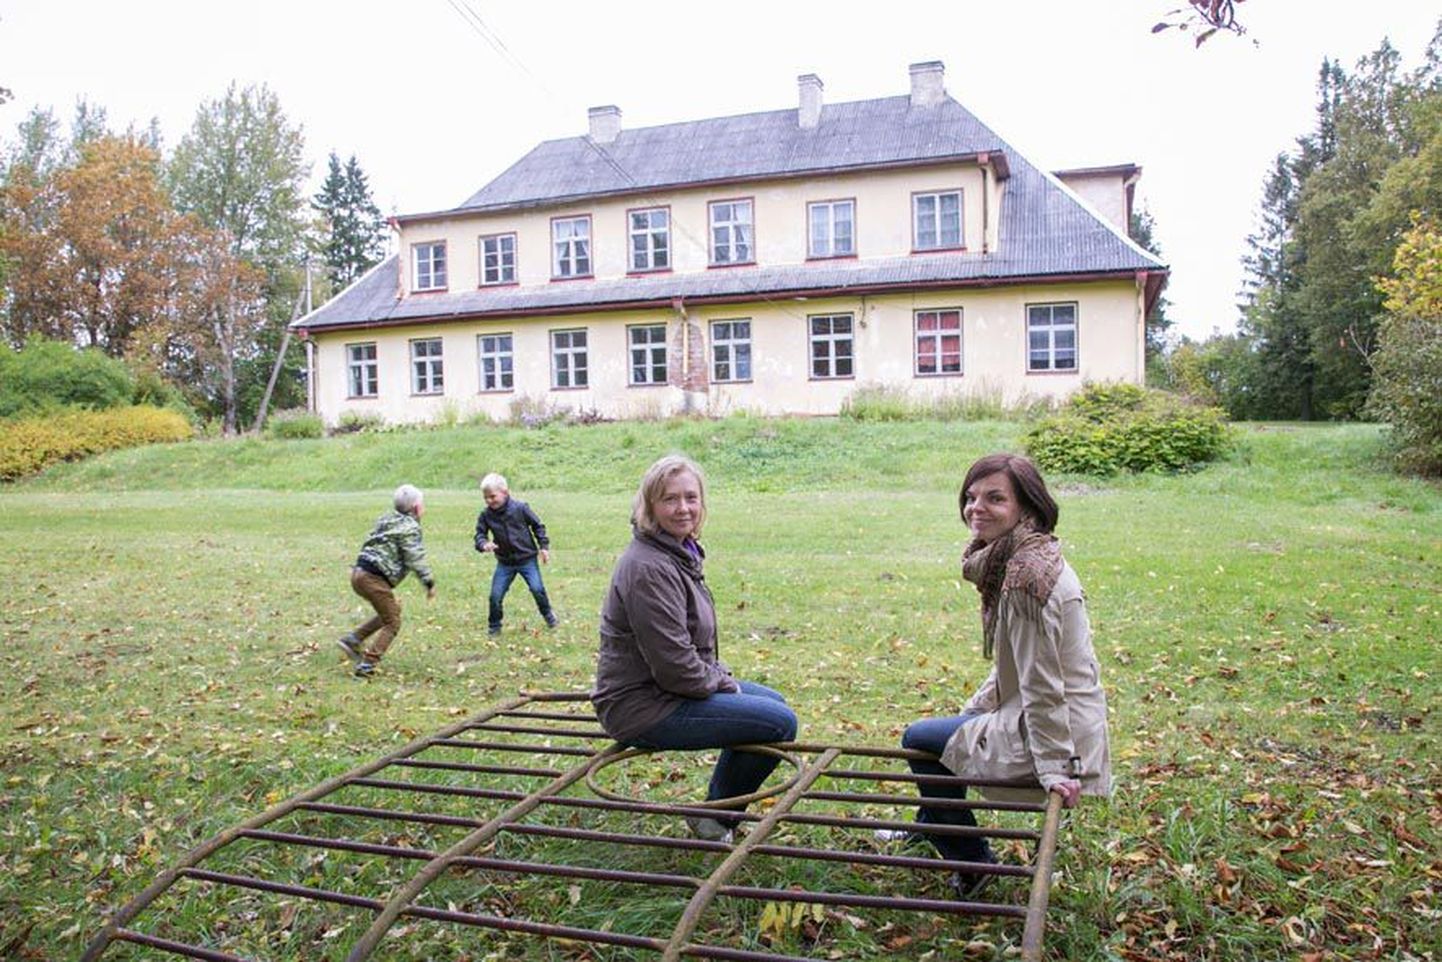 Villevere koolimaja ühed omanikud Triin Tarn (pildil vasakul) ja Margit Viigipuu on indu ja tahet täis. Nad usuvad, et õige varsti näitavad aastaid tondilossina seisnud koolimajas põlevad tuled, kuidas sees jälle elu keeb.